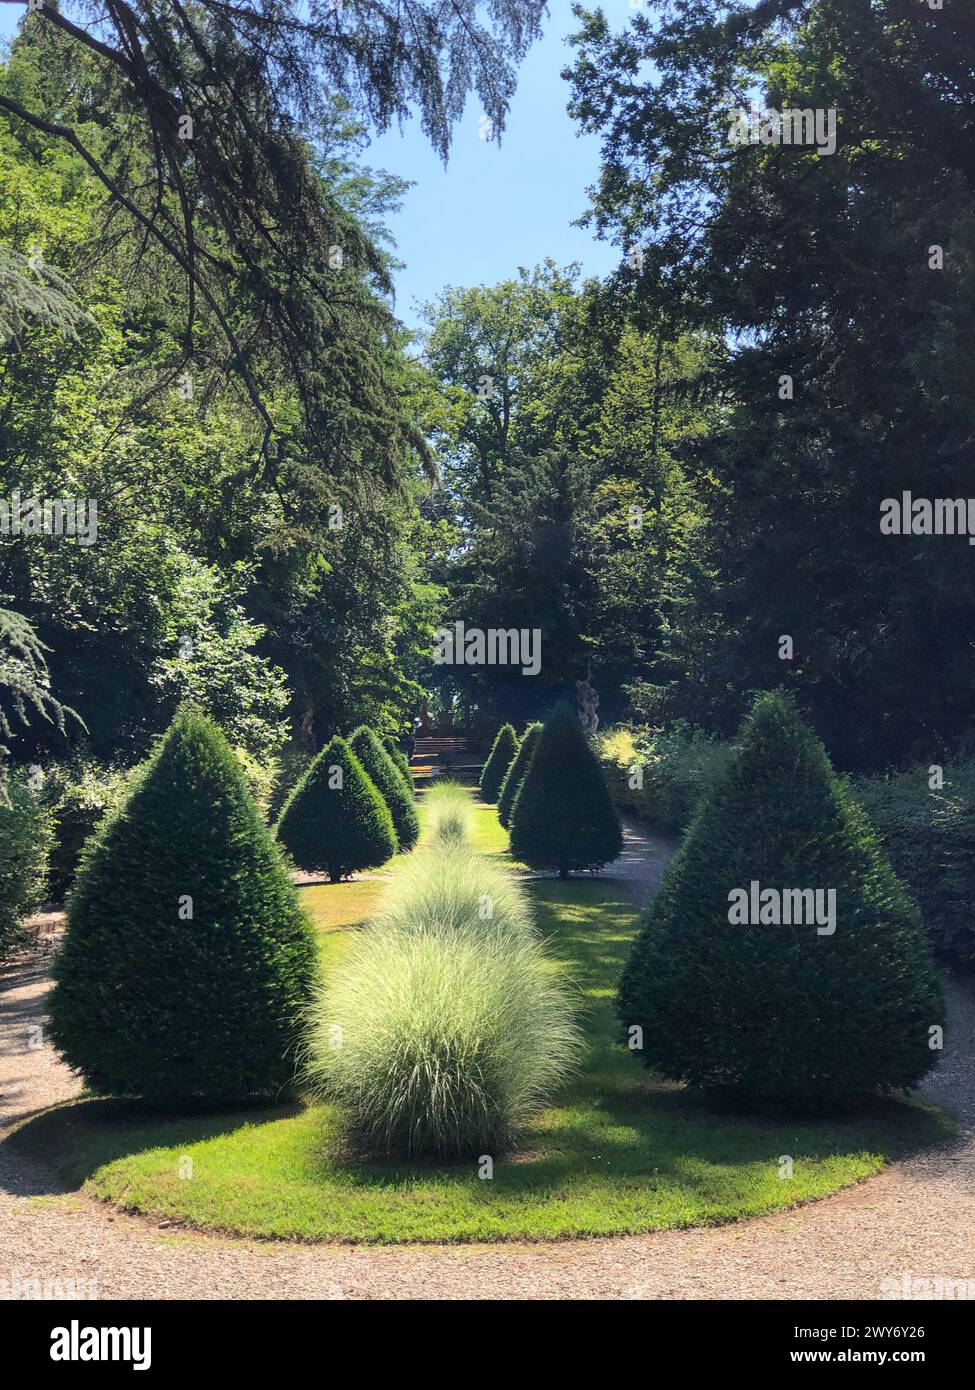 Grazzano Visconti, italy - june 11, 2023: perspective view of a garden in a beautiful park of grazzano visconti castle Stock Photo